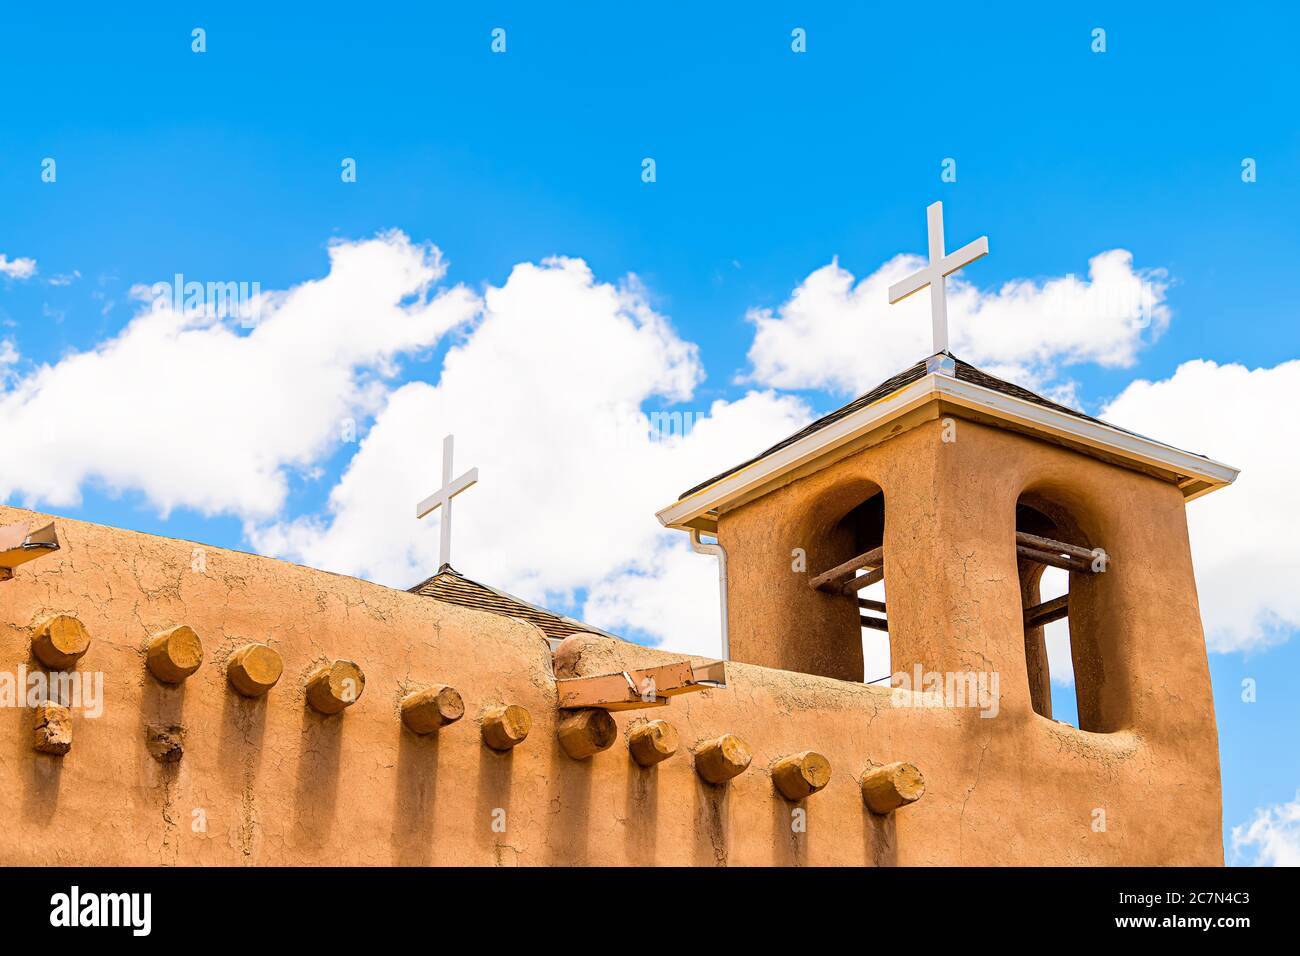 Ranchos de Taos closeup della chiesa di San Francisco de Aseis campanile con croce nel New Mexico basso angolo guardando verso il cielo blu Foto Stock